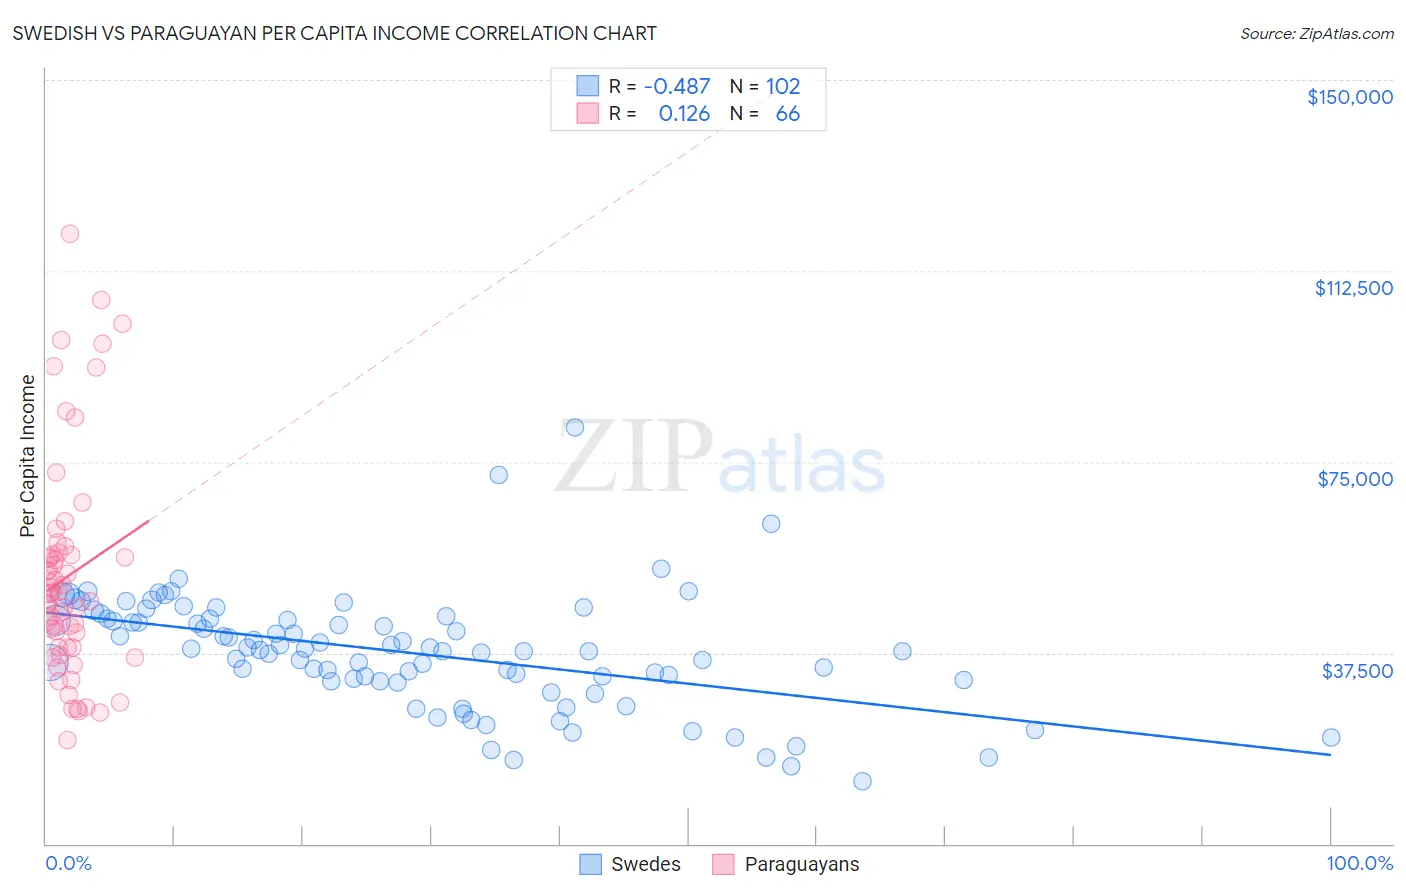 Swedish vs Paraguayan Per Capita Income